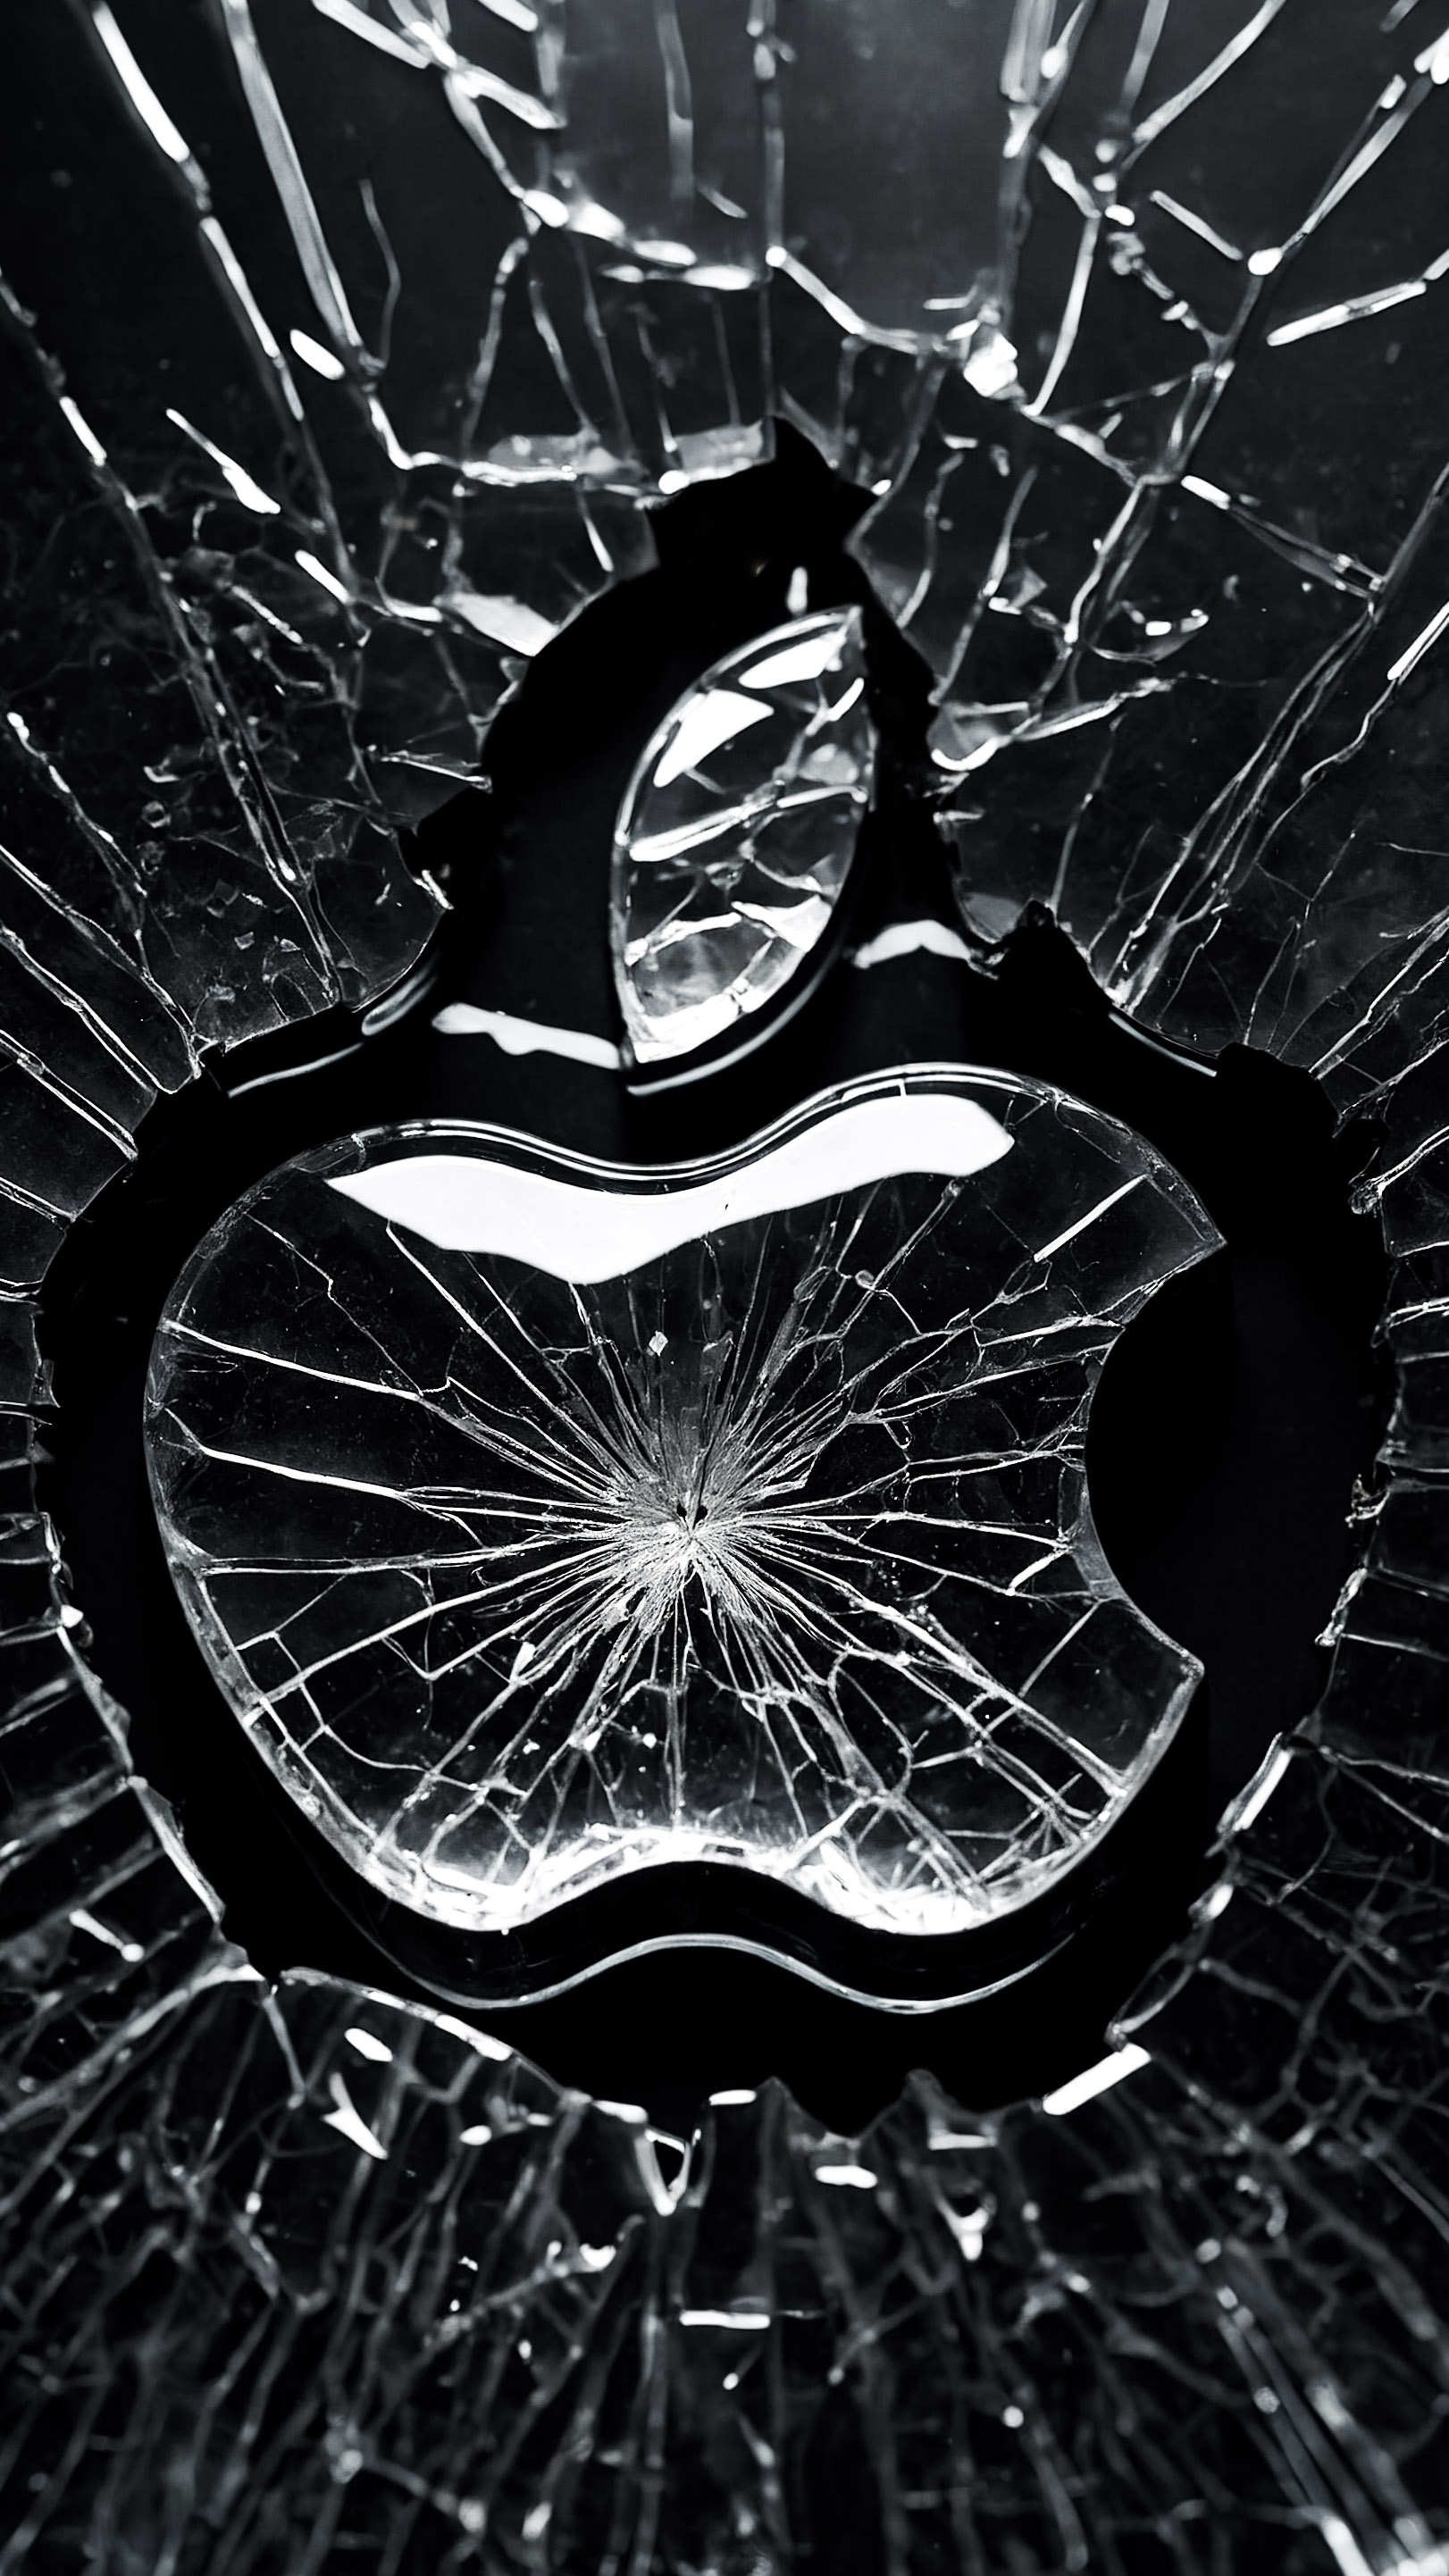 Transformez l'apparence de votre appareil avec un logo Apple sur fond noir, présentant une surface de verre brisée, avec des fissures rayonnant vers l'extérieur à partir d'un point central sous la forme du logo Apple emblématique.